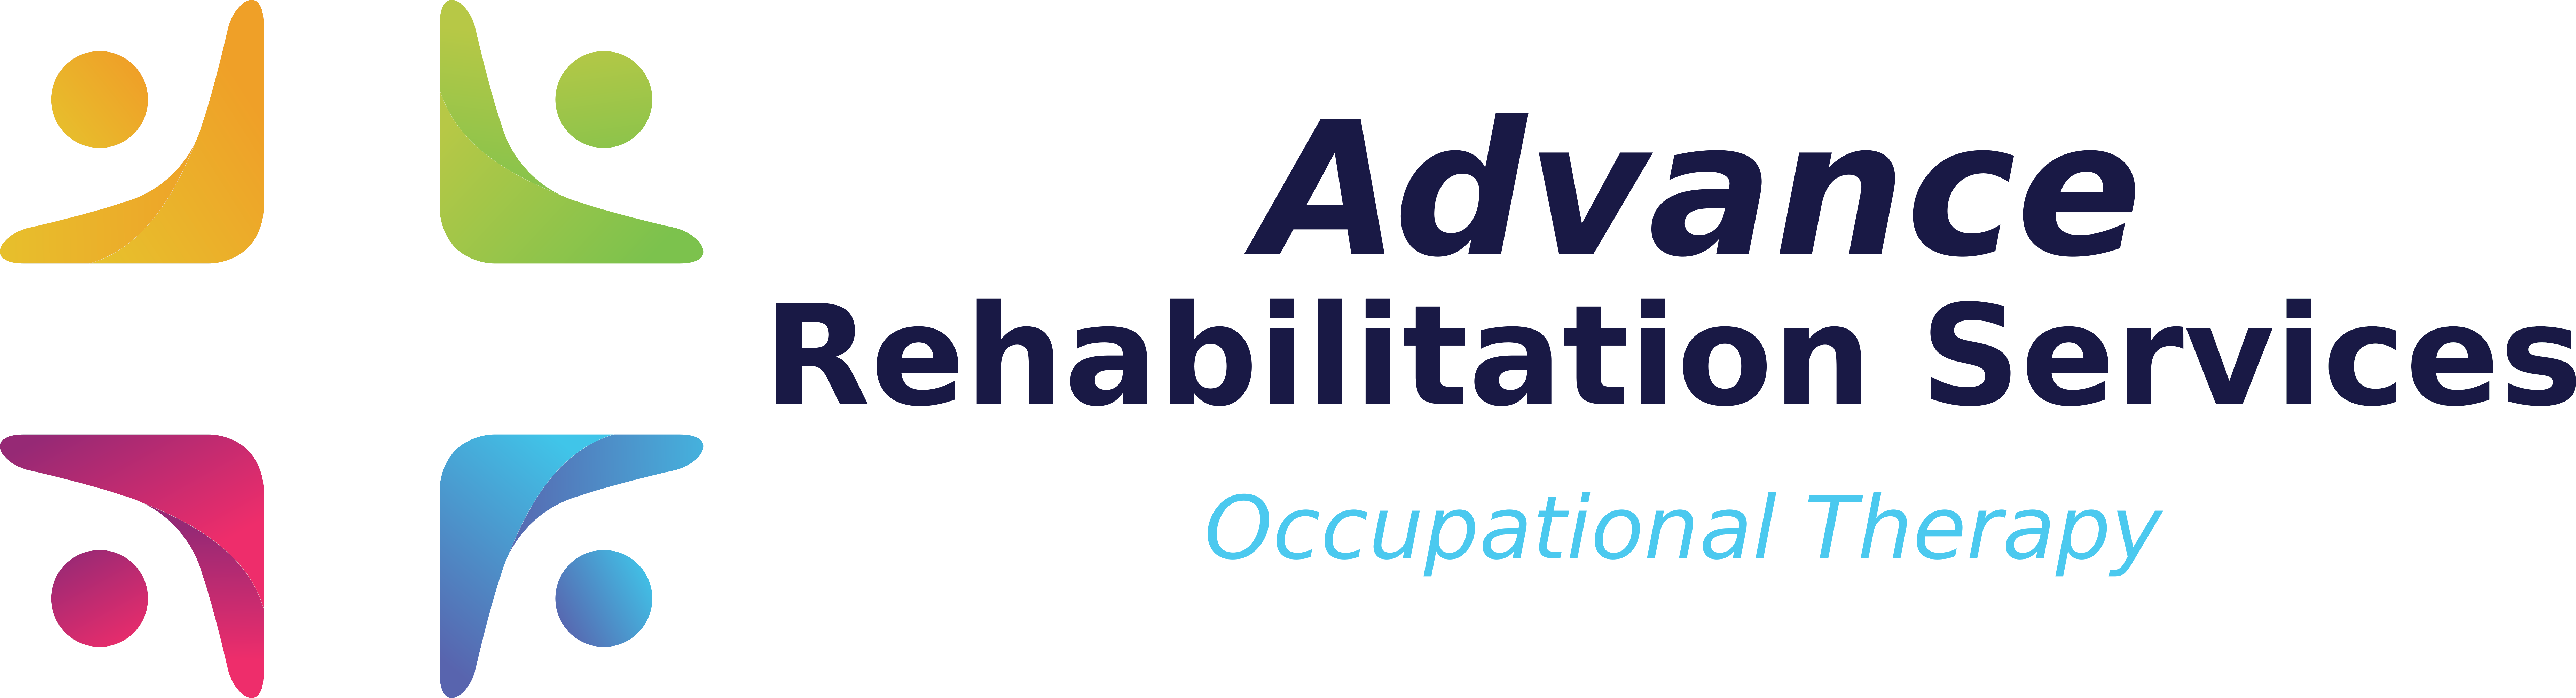 Rehabilitation Logo - Free Vectors & PSDs to Download